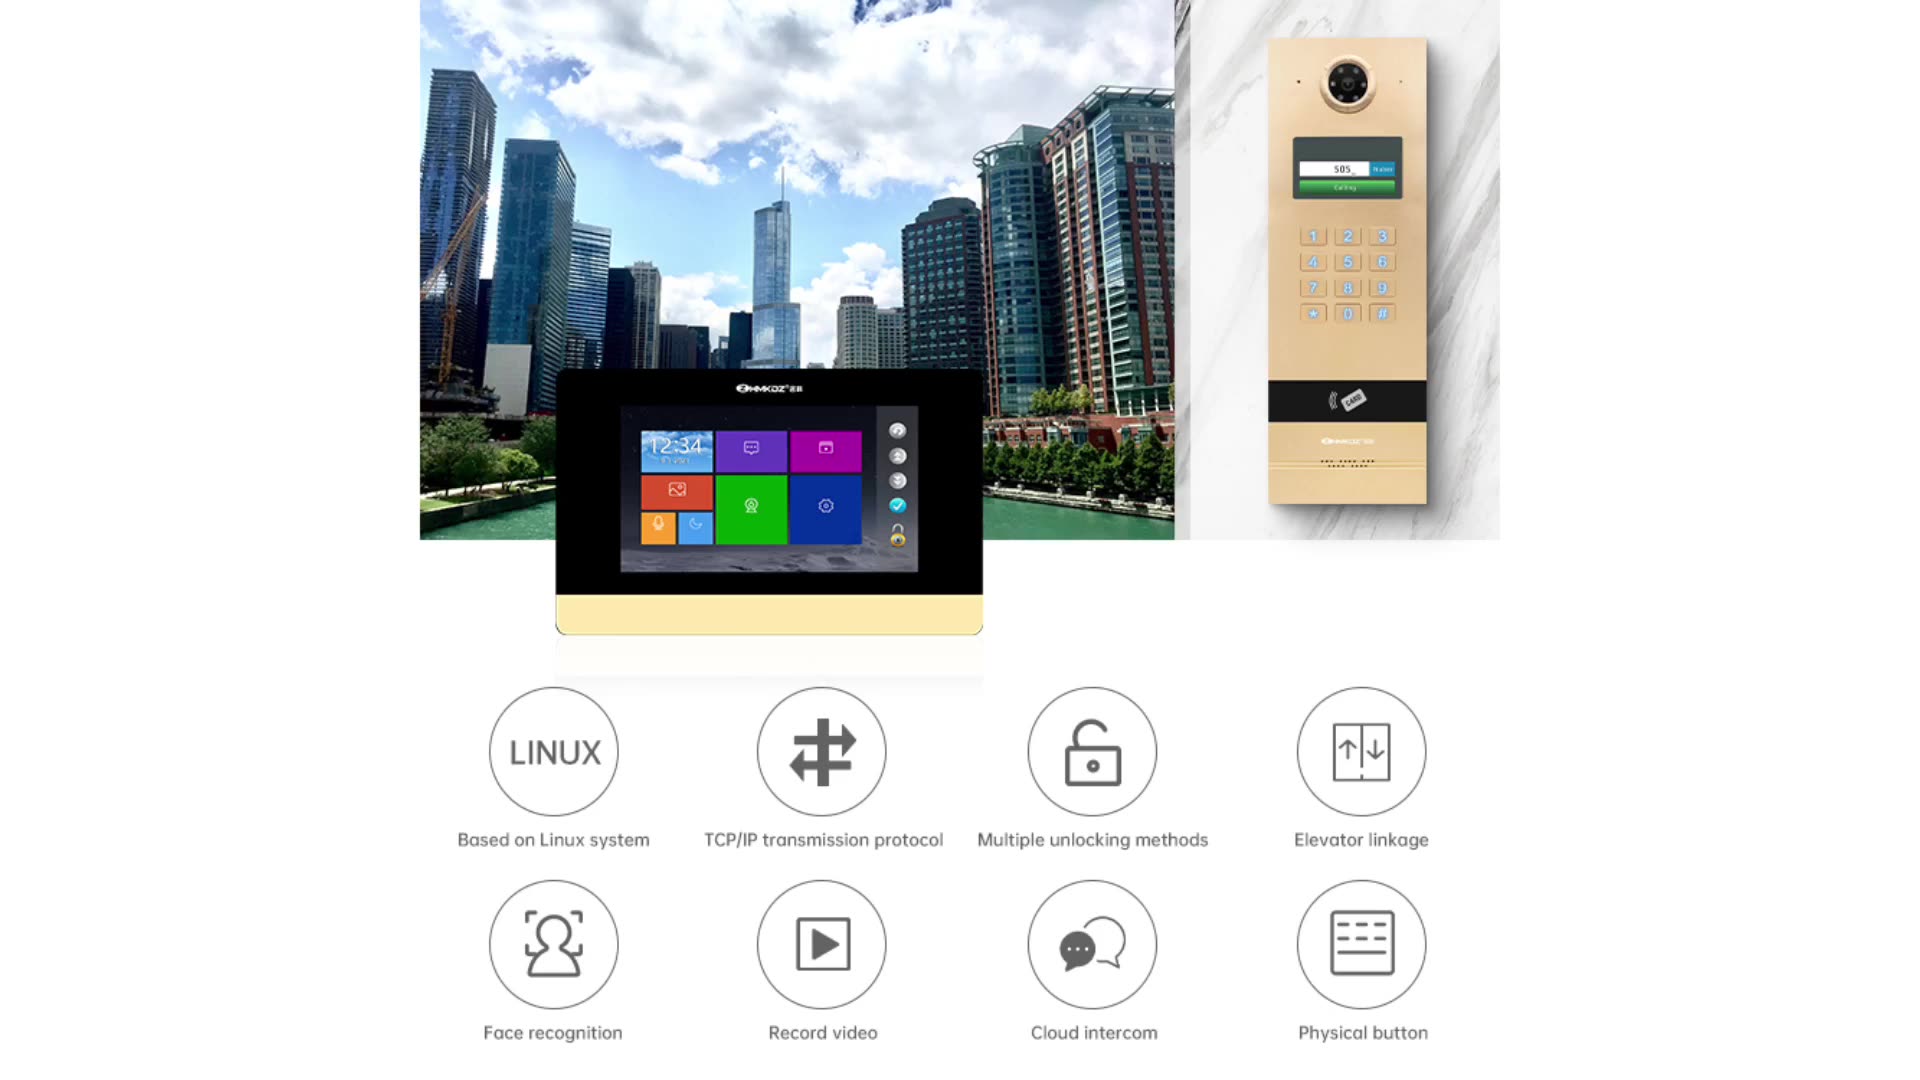 Teléfono digital con el sistema Android Video Doorbell Intercom Home Intercom1